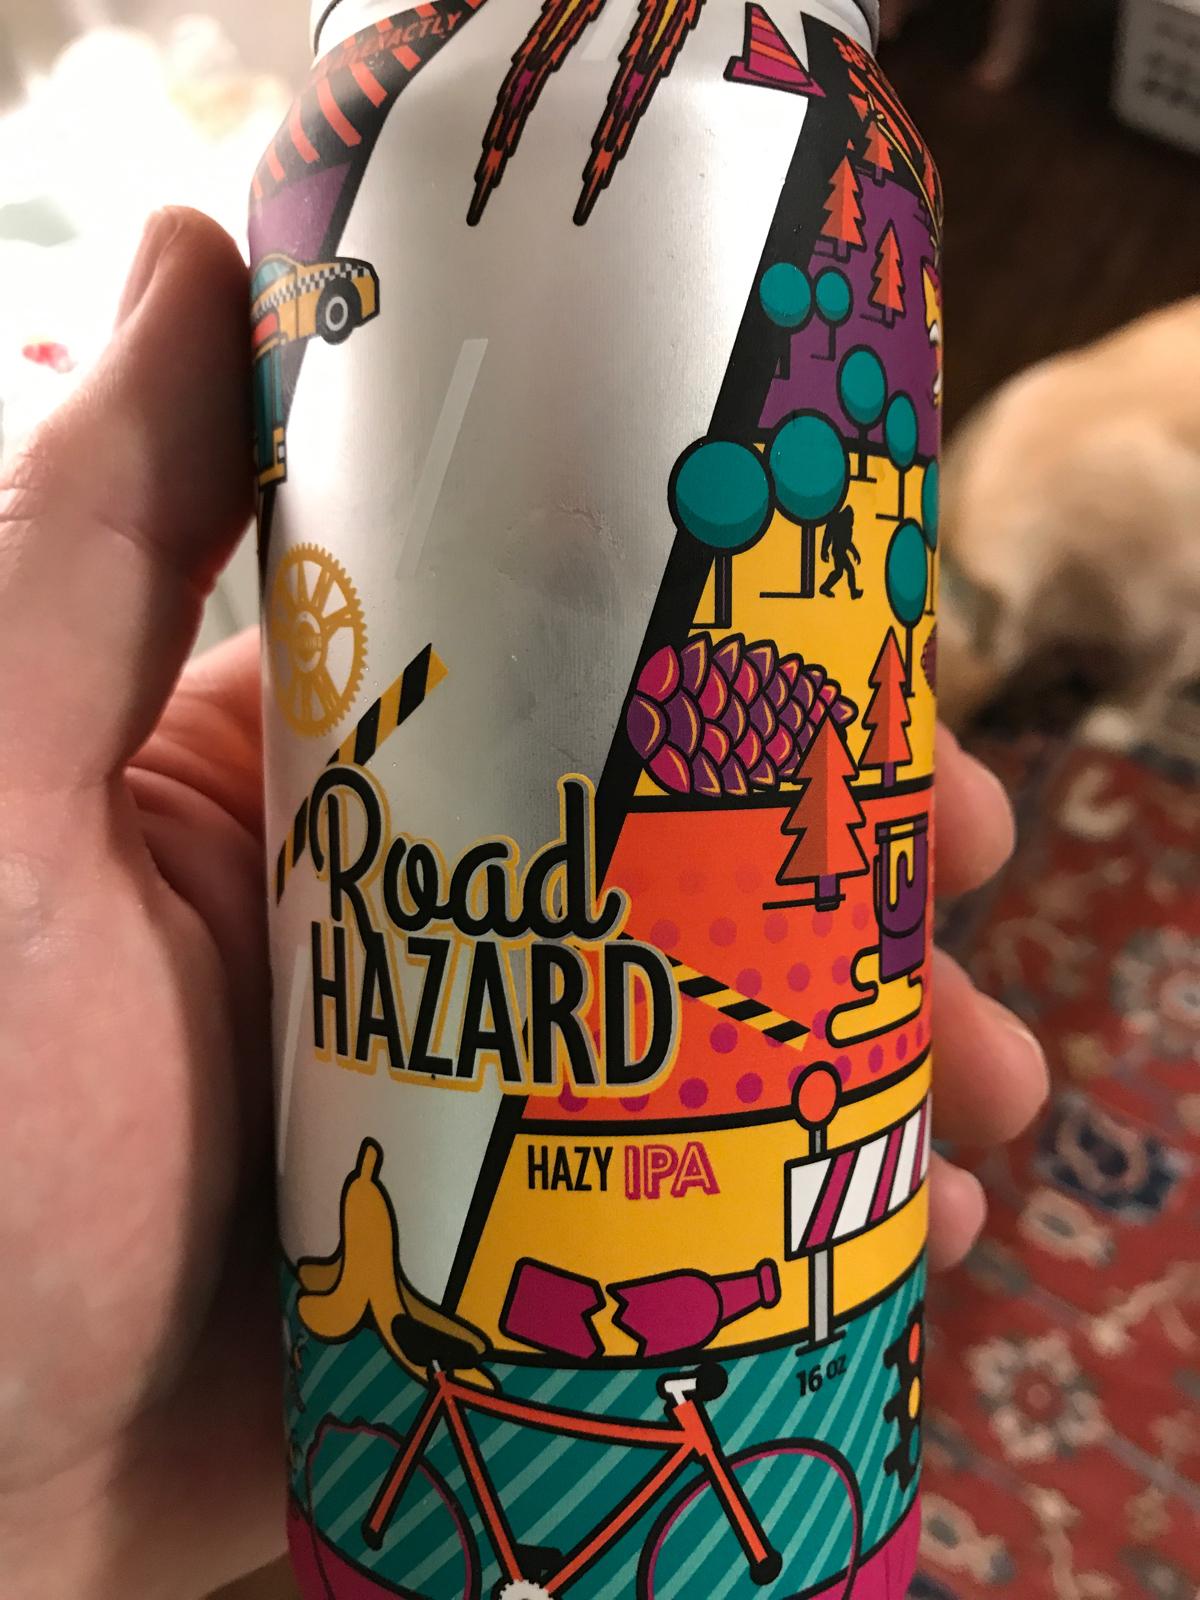 Road Hazard Hazy IPA